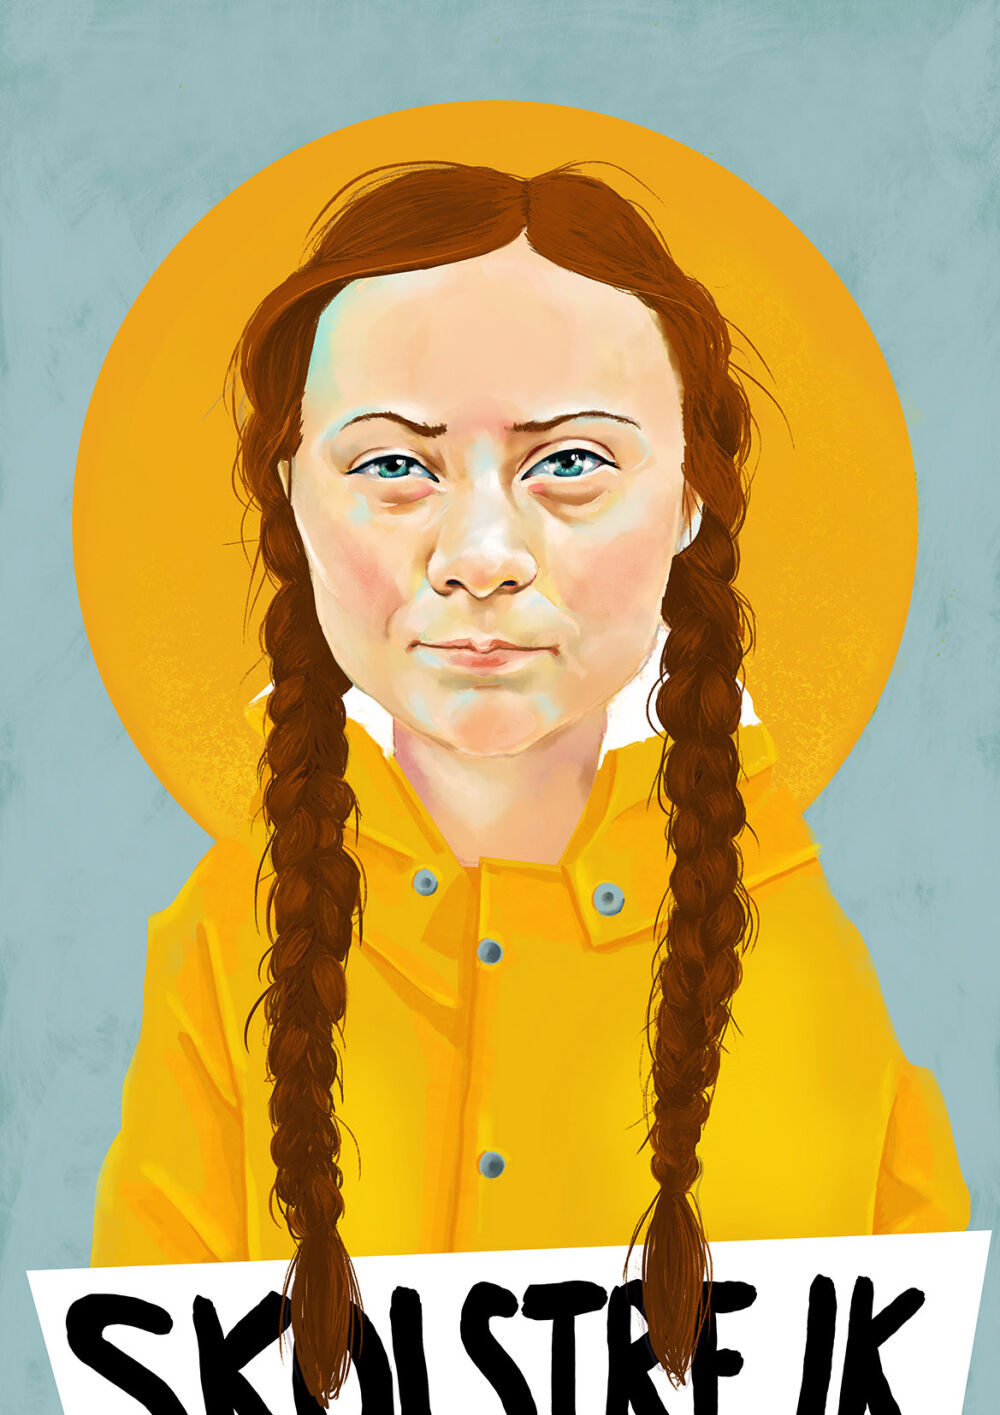 Portrait of Greta Thunberg by Eplet